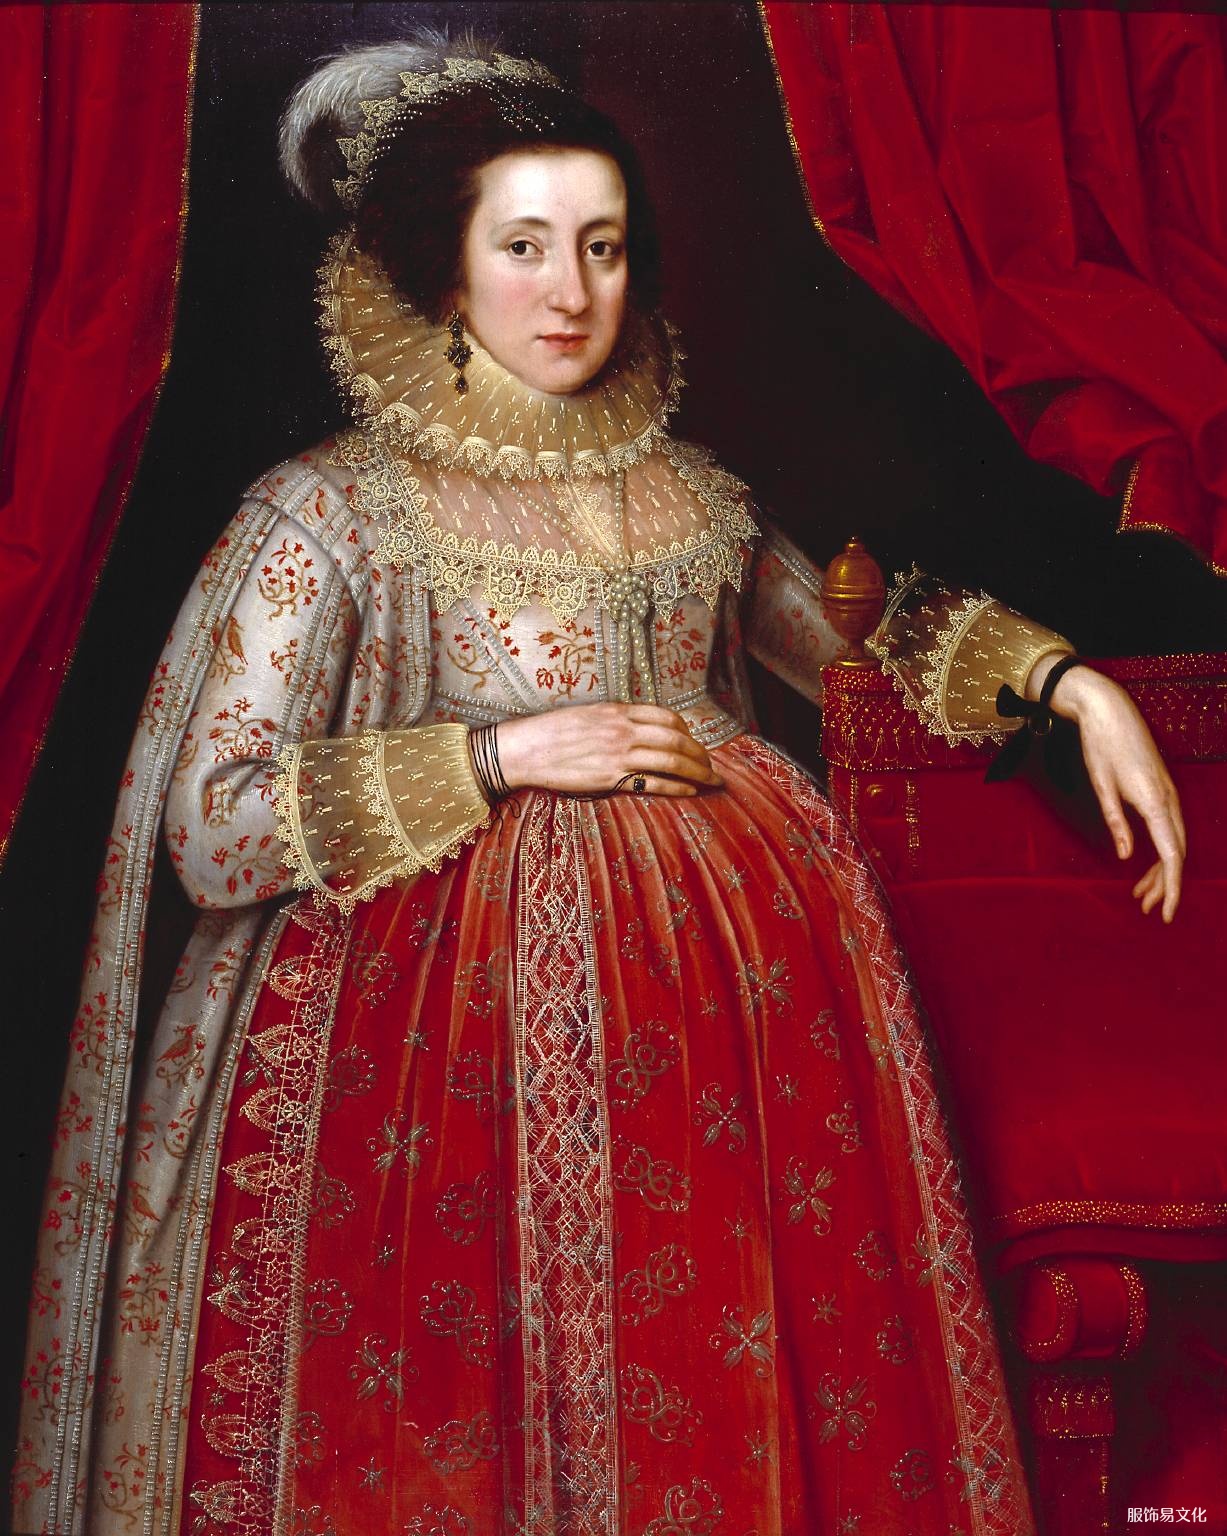 孕妇和妓女服饰时尚 – 16 世纪和 17 世纪